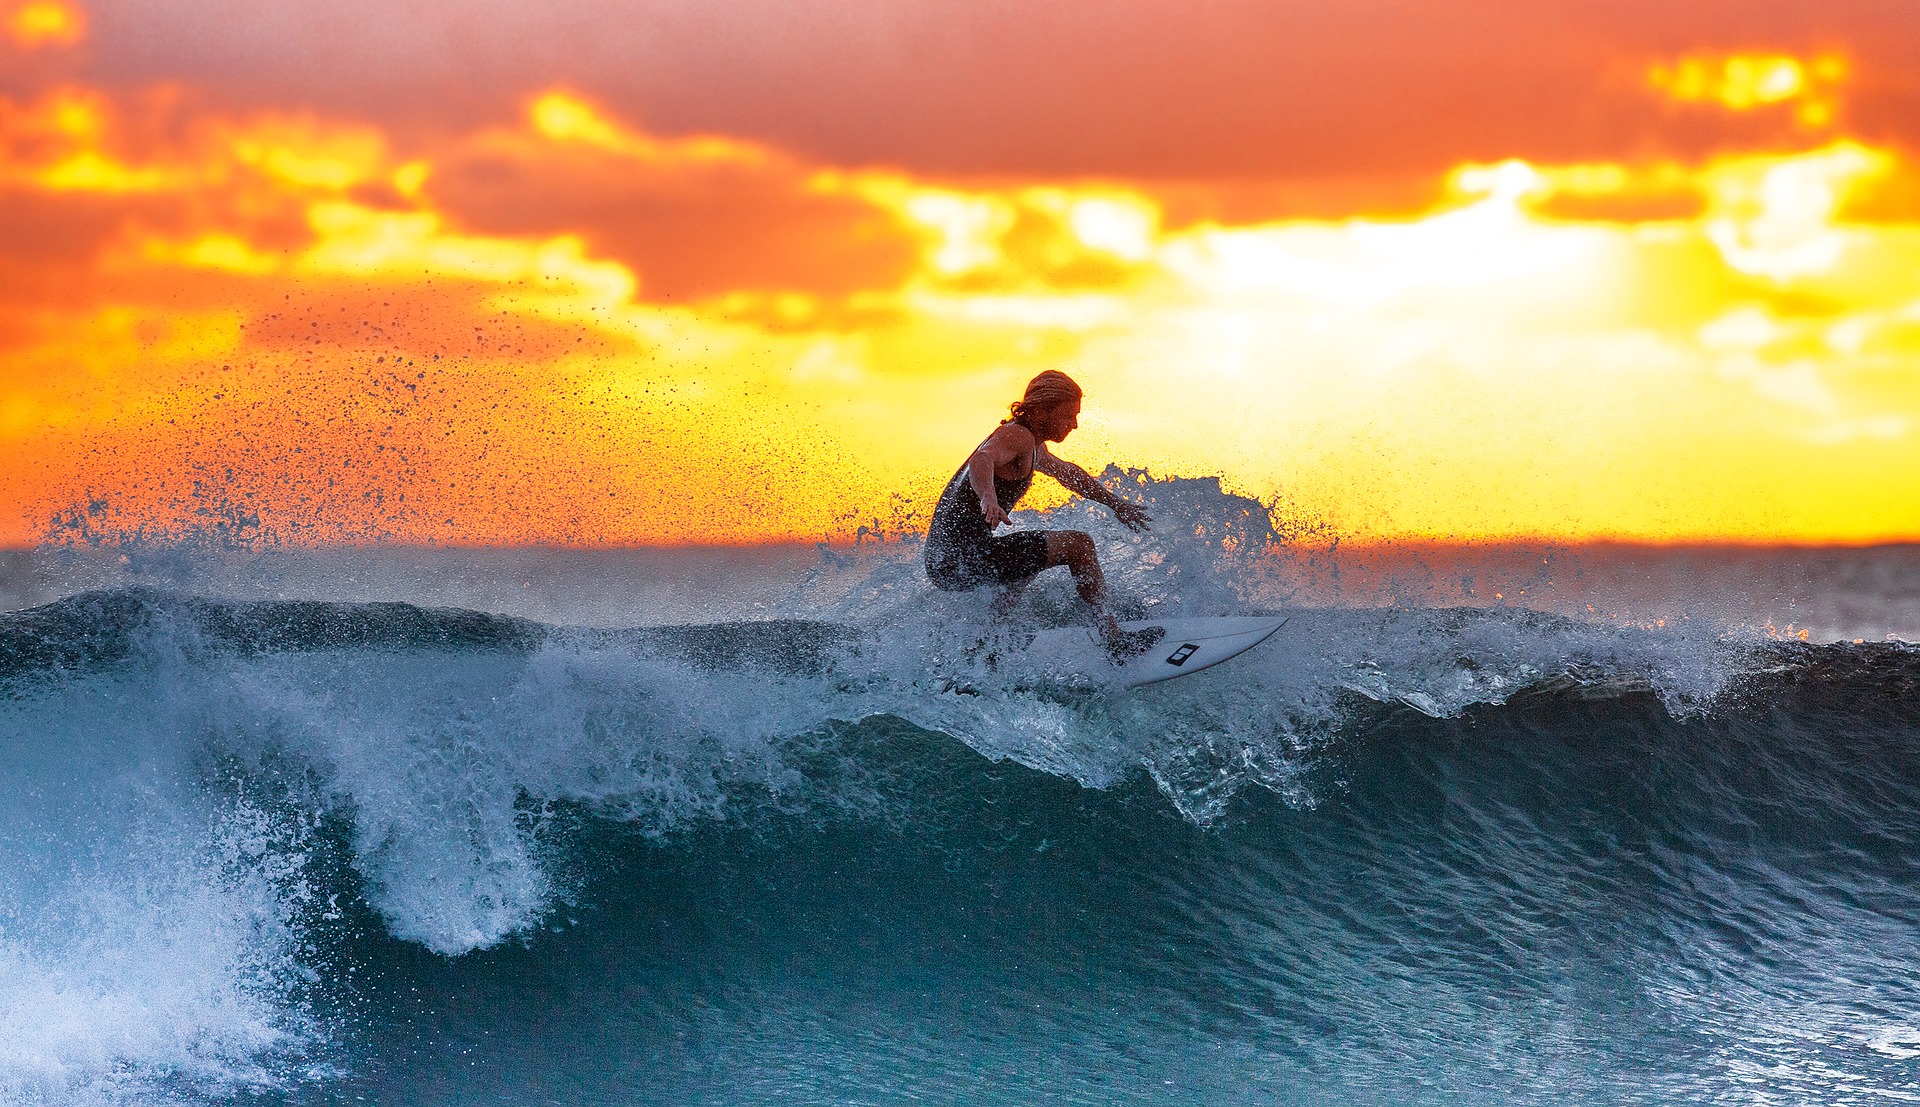 Campeonato de Surf agitará as águas de Ponta Negra!